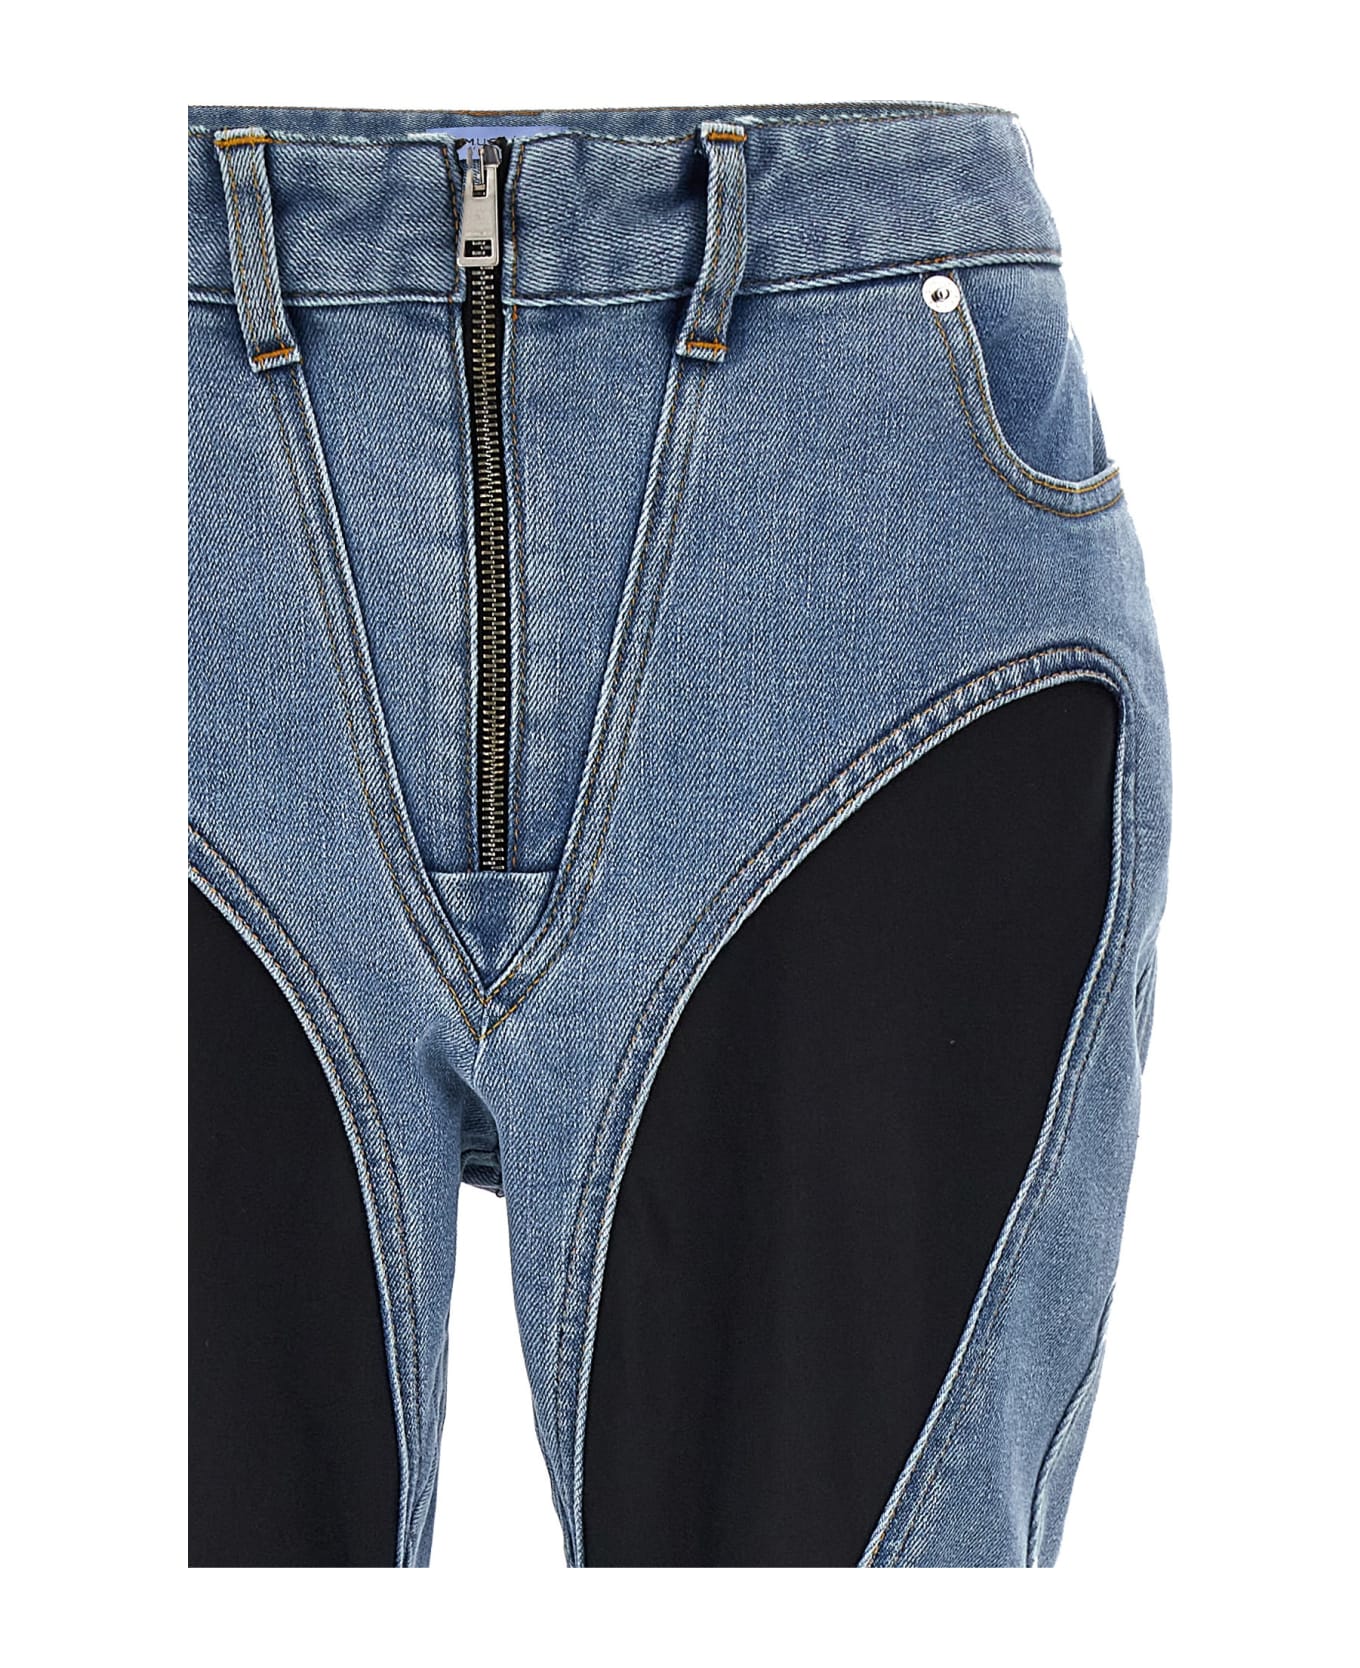 Mugler 'zipped Bi-material' Jeans - Multicolor ボトムス